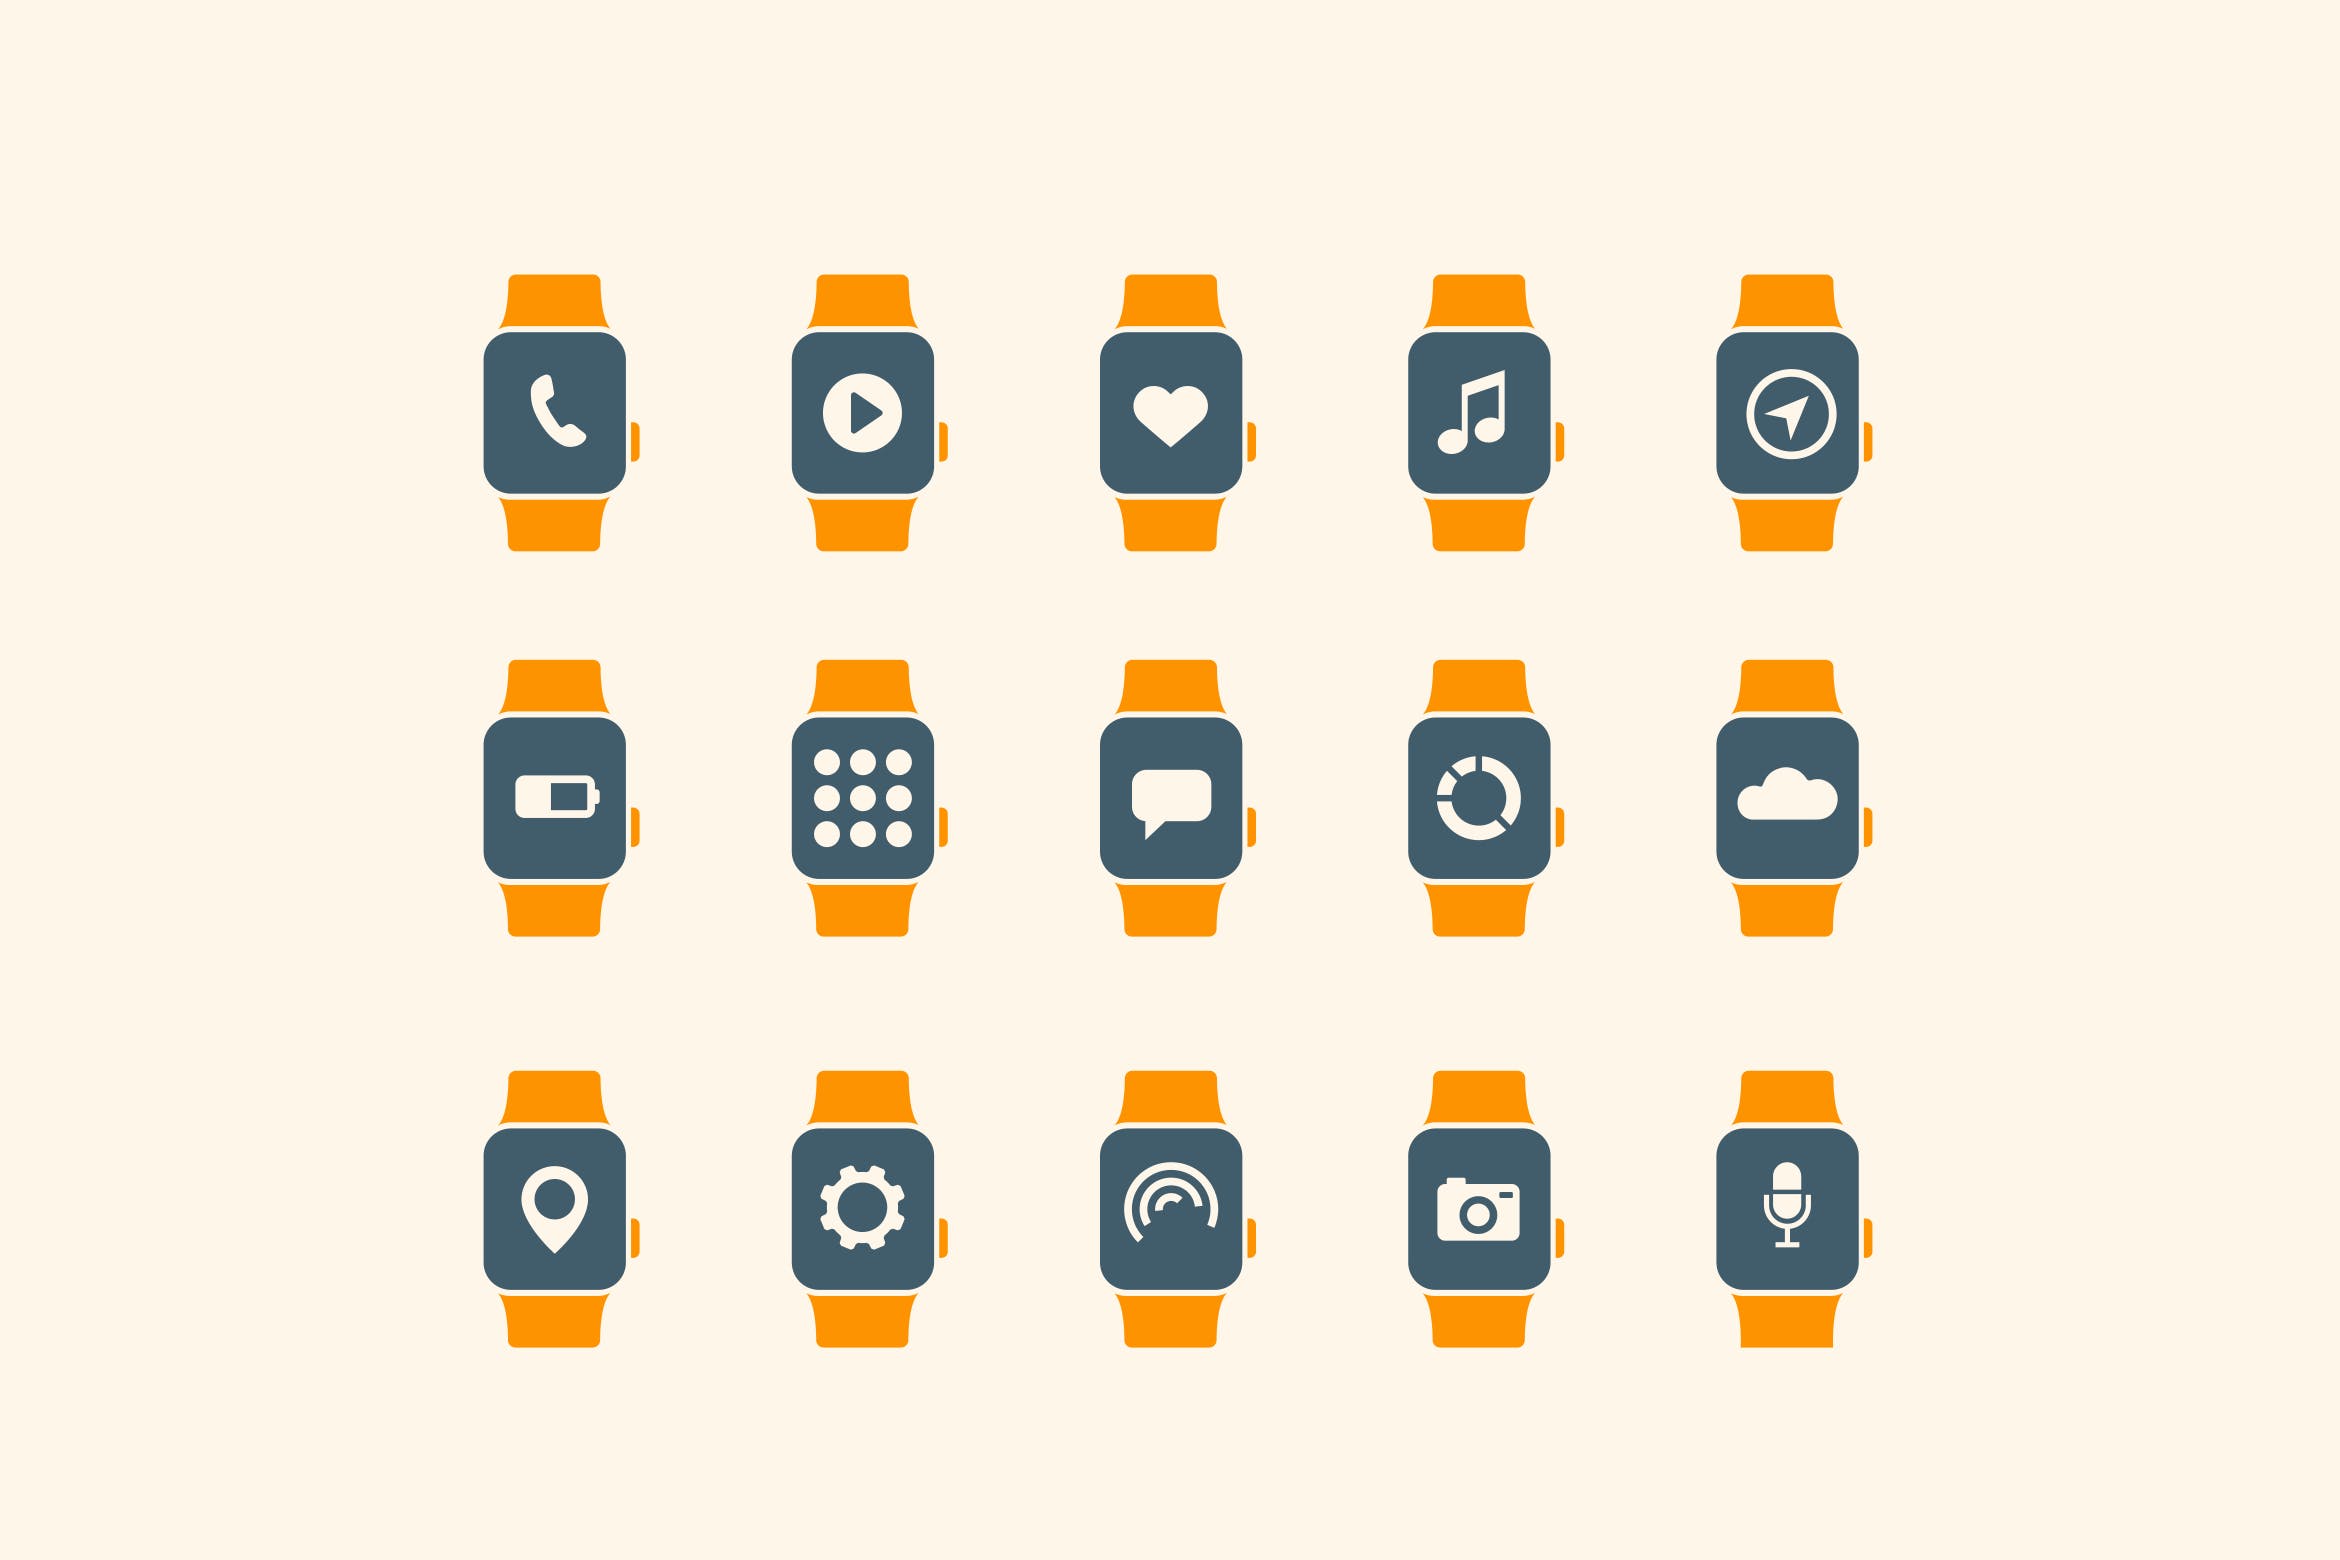 15枚智能手表APP应用主题矢量素材天下精选图标 15 Smart Watch App Icons插图